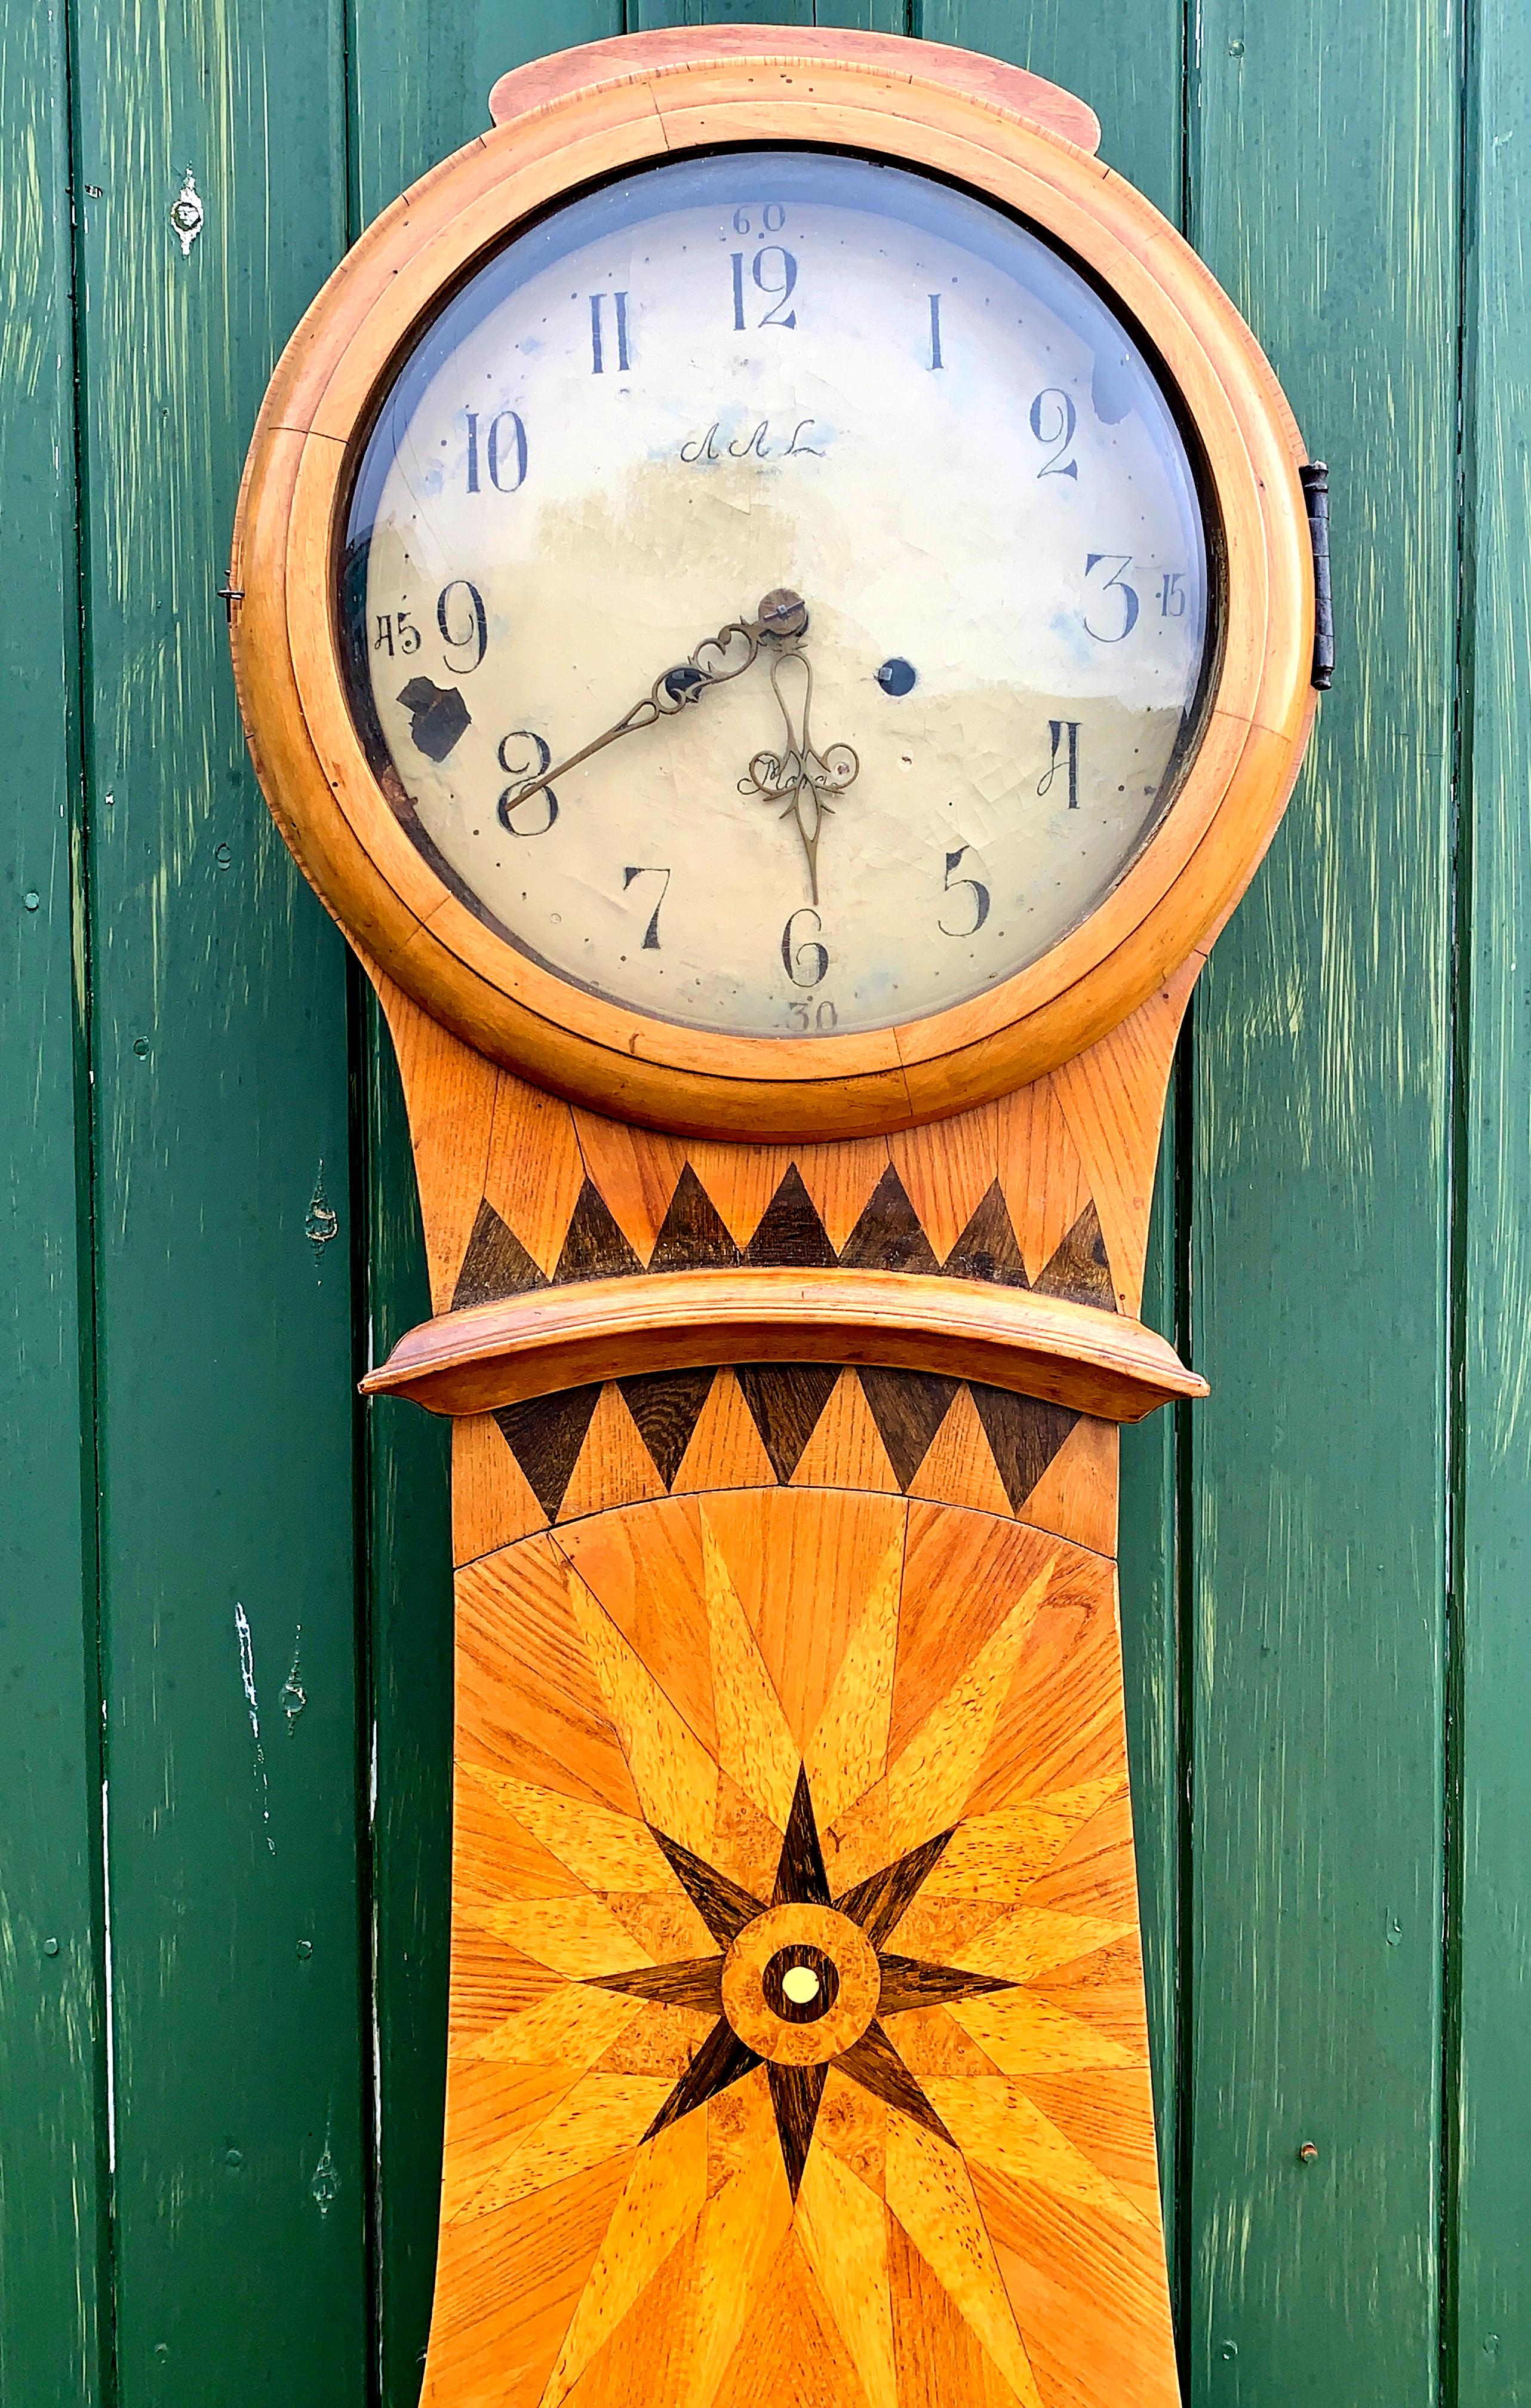 Rare horloge mora suédoise ancienne du milieu des années 1800 en finition naturelle avec un exceptionnel motif de marqueterie incrusté de détails et d'étoiles. Le corps est de forme cintrée et la face est riche en détails. Mesures : 210cm.

Il